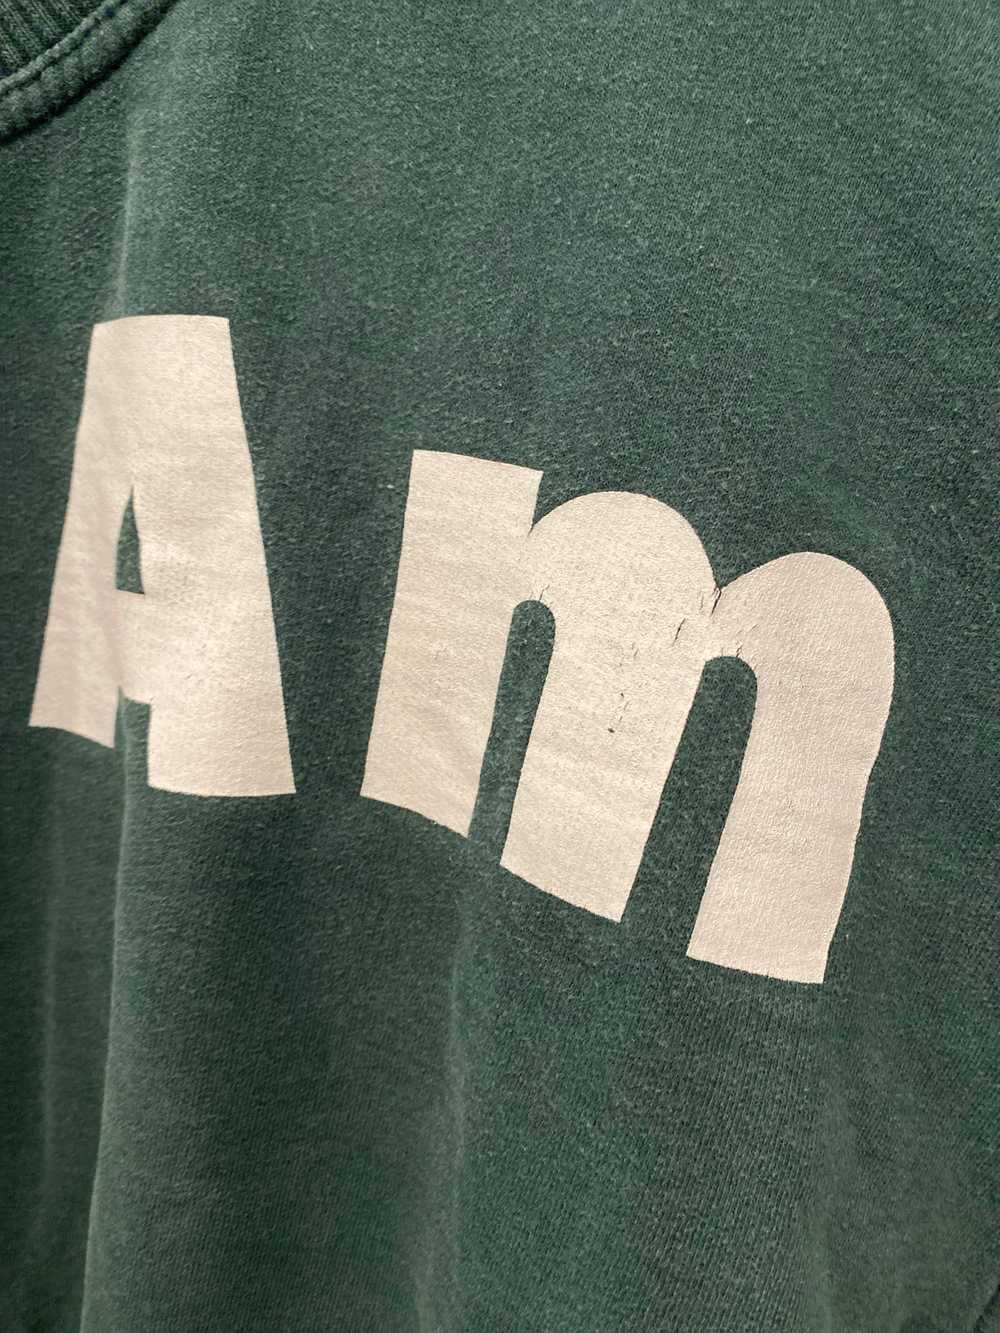 Pan Am Games Sweatshirt 1999 - image 2